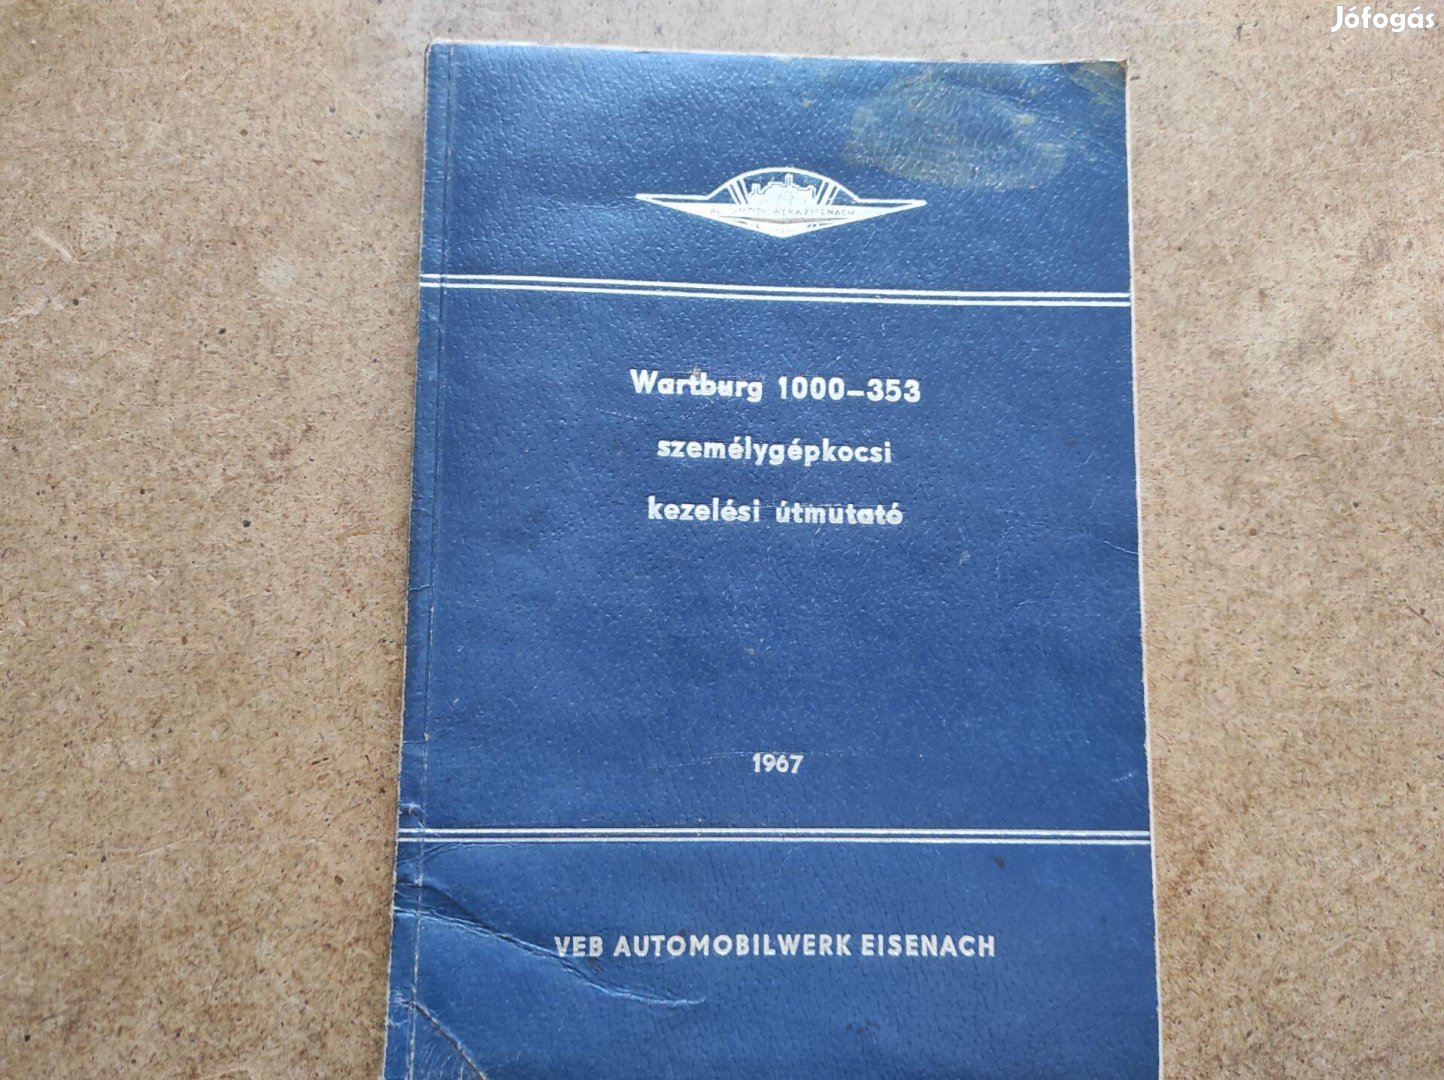 Wartburg 1000 - 353 kezelési utasítás. 1967